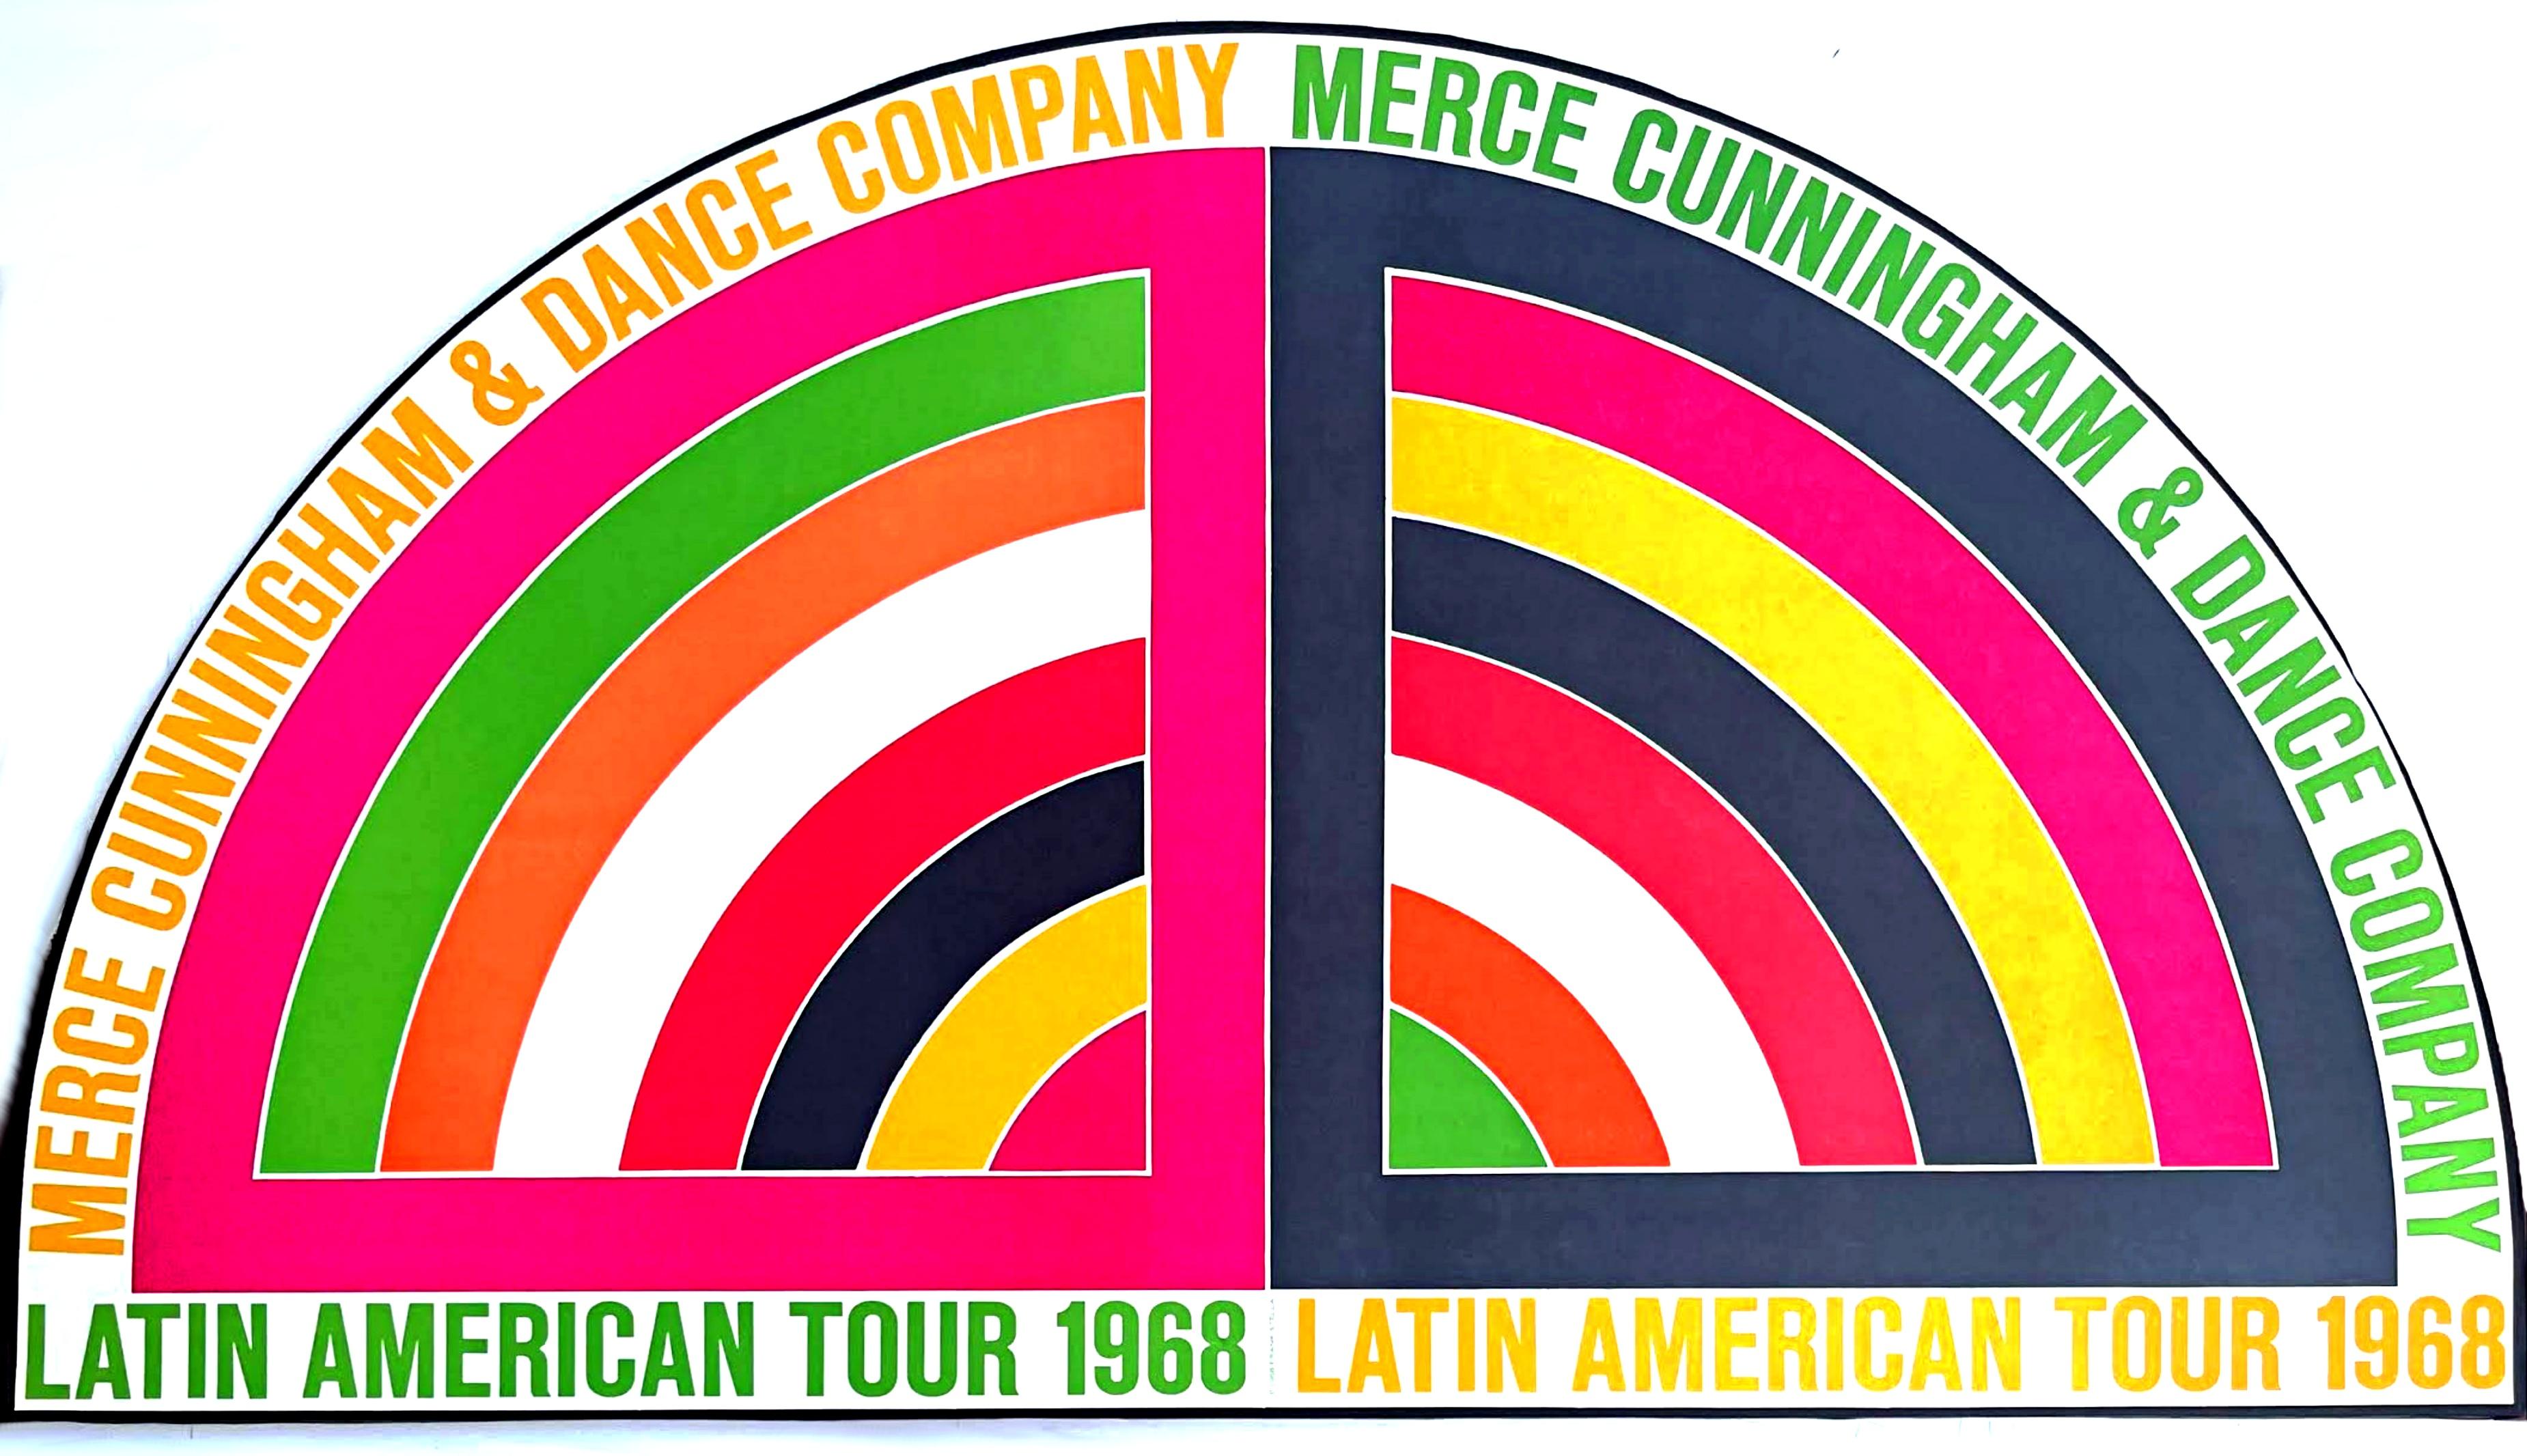 Merce Cunningham & Dance Company Lateinamerikanische Tournee